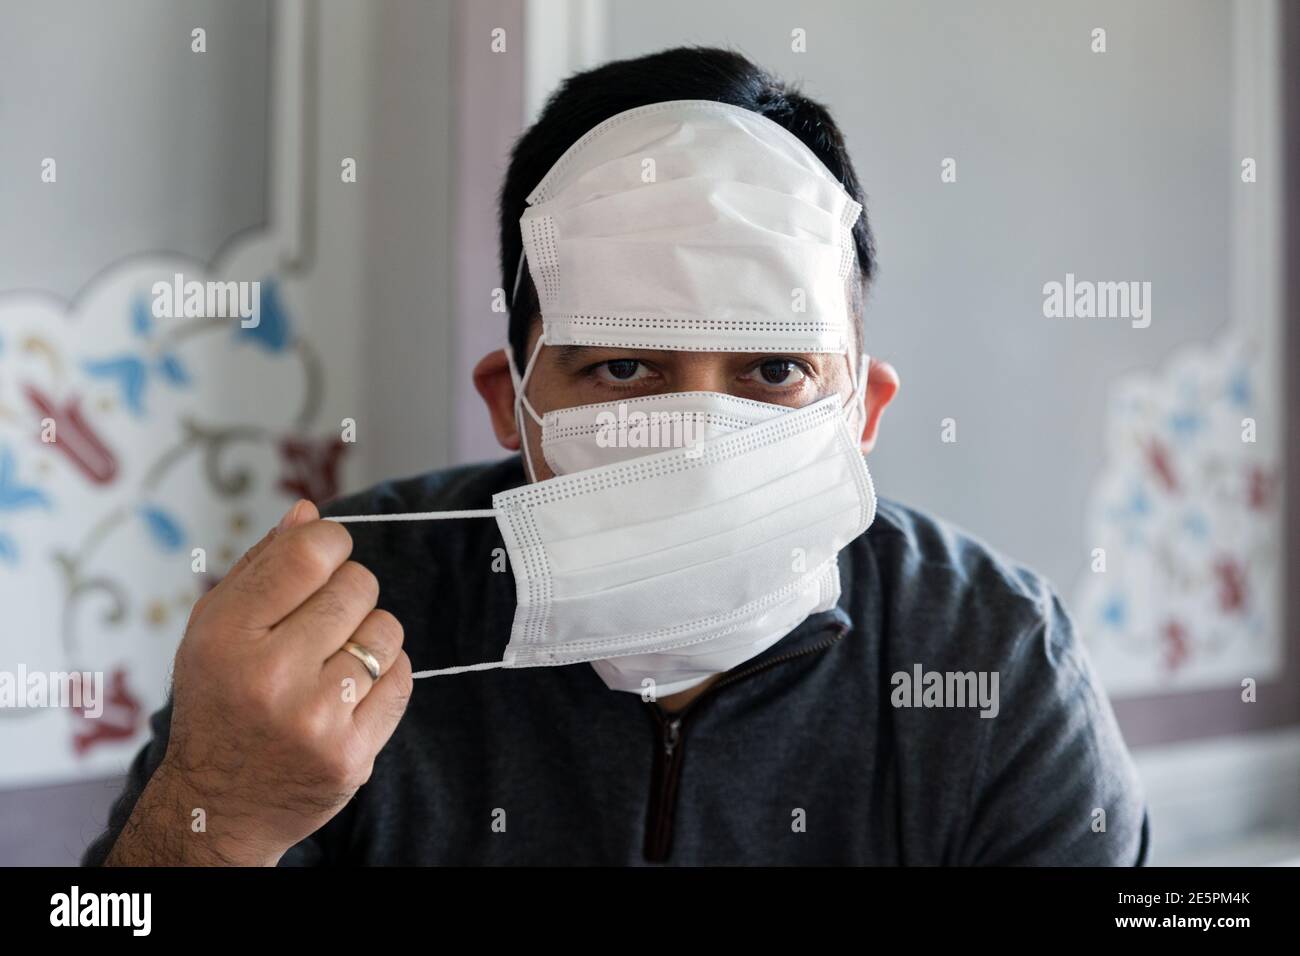 Ritratto dell'uomo con più maschere, con inquadratura interna, che si affaccia sull'obiettivo Foto Stock